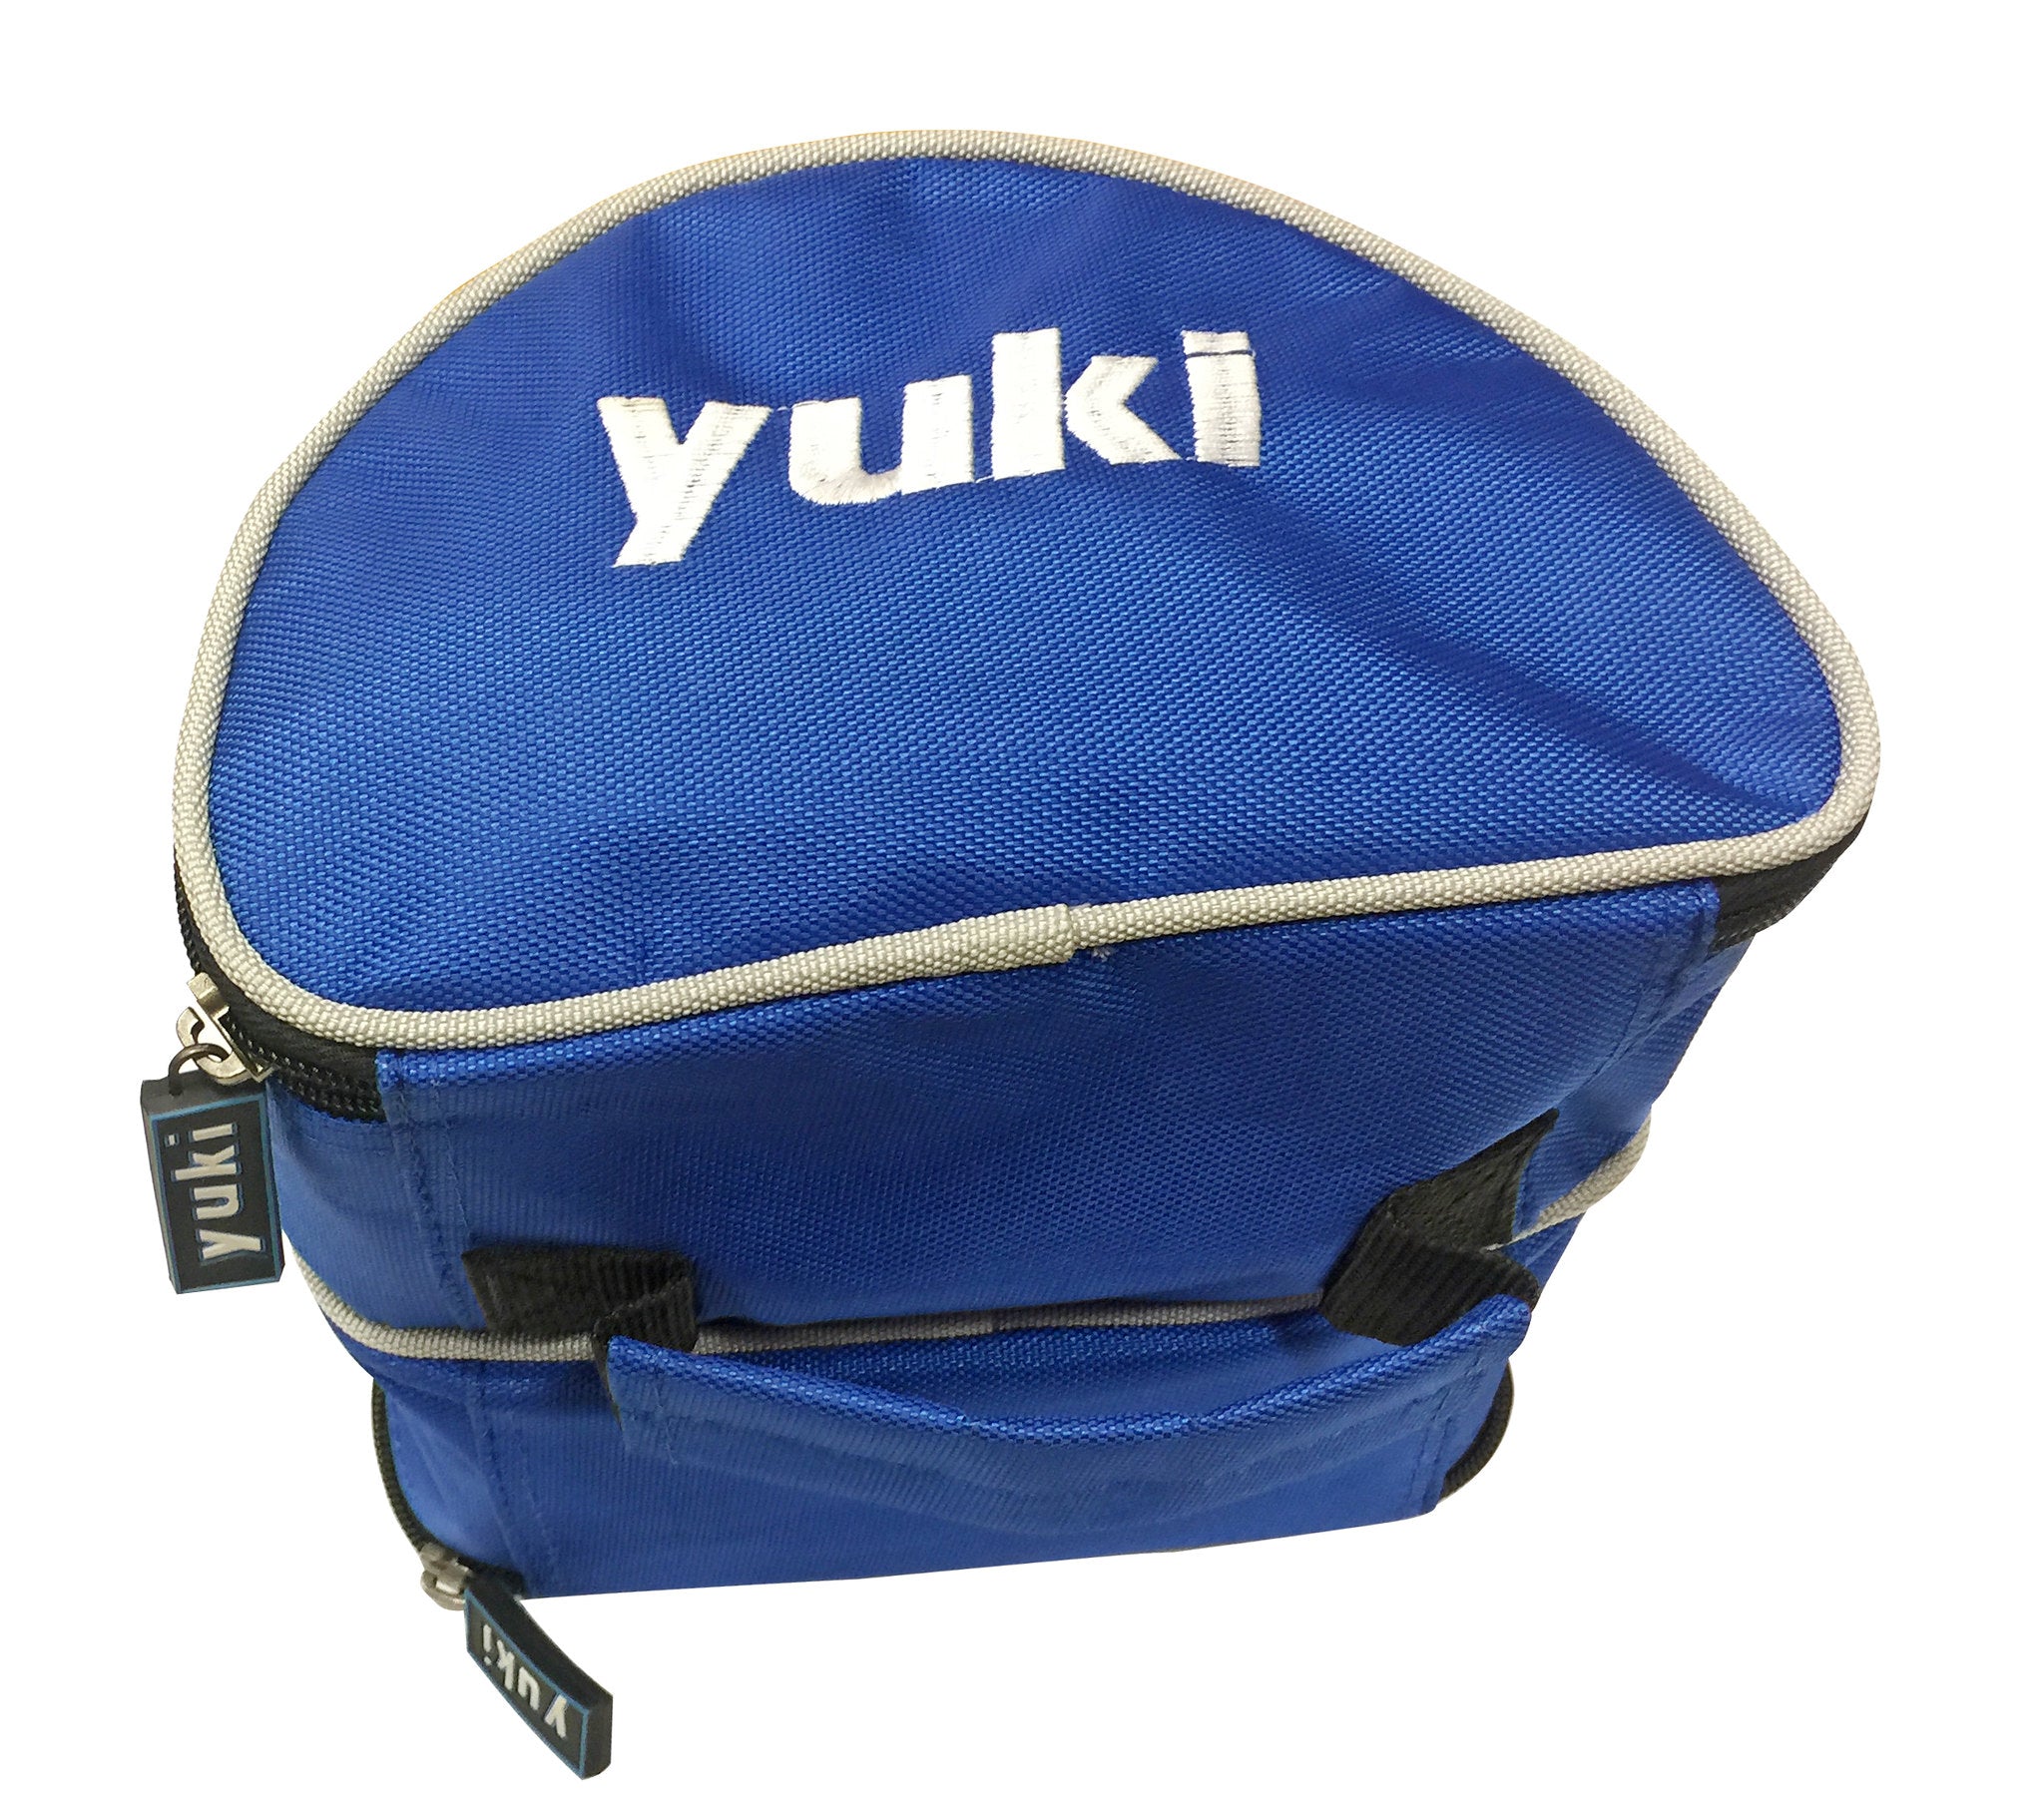 Yuki Double Fishing Reel Bag Case